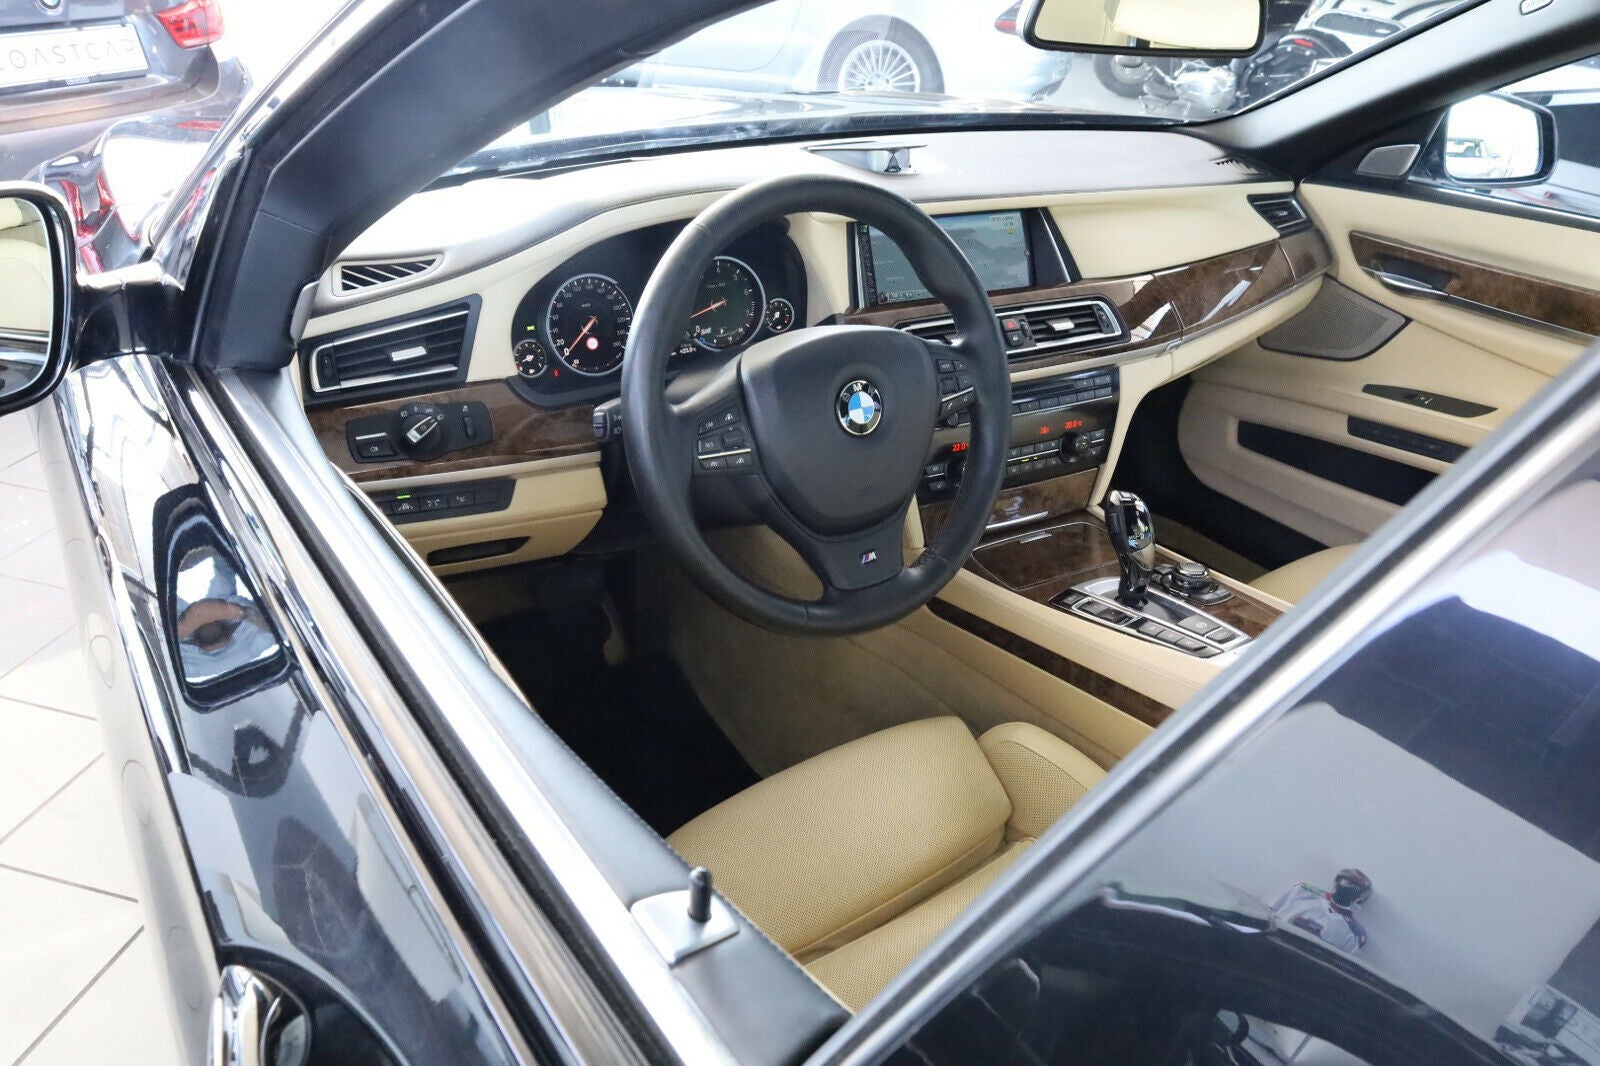 Billede af BMW 750i 4,4 xDrive aut.